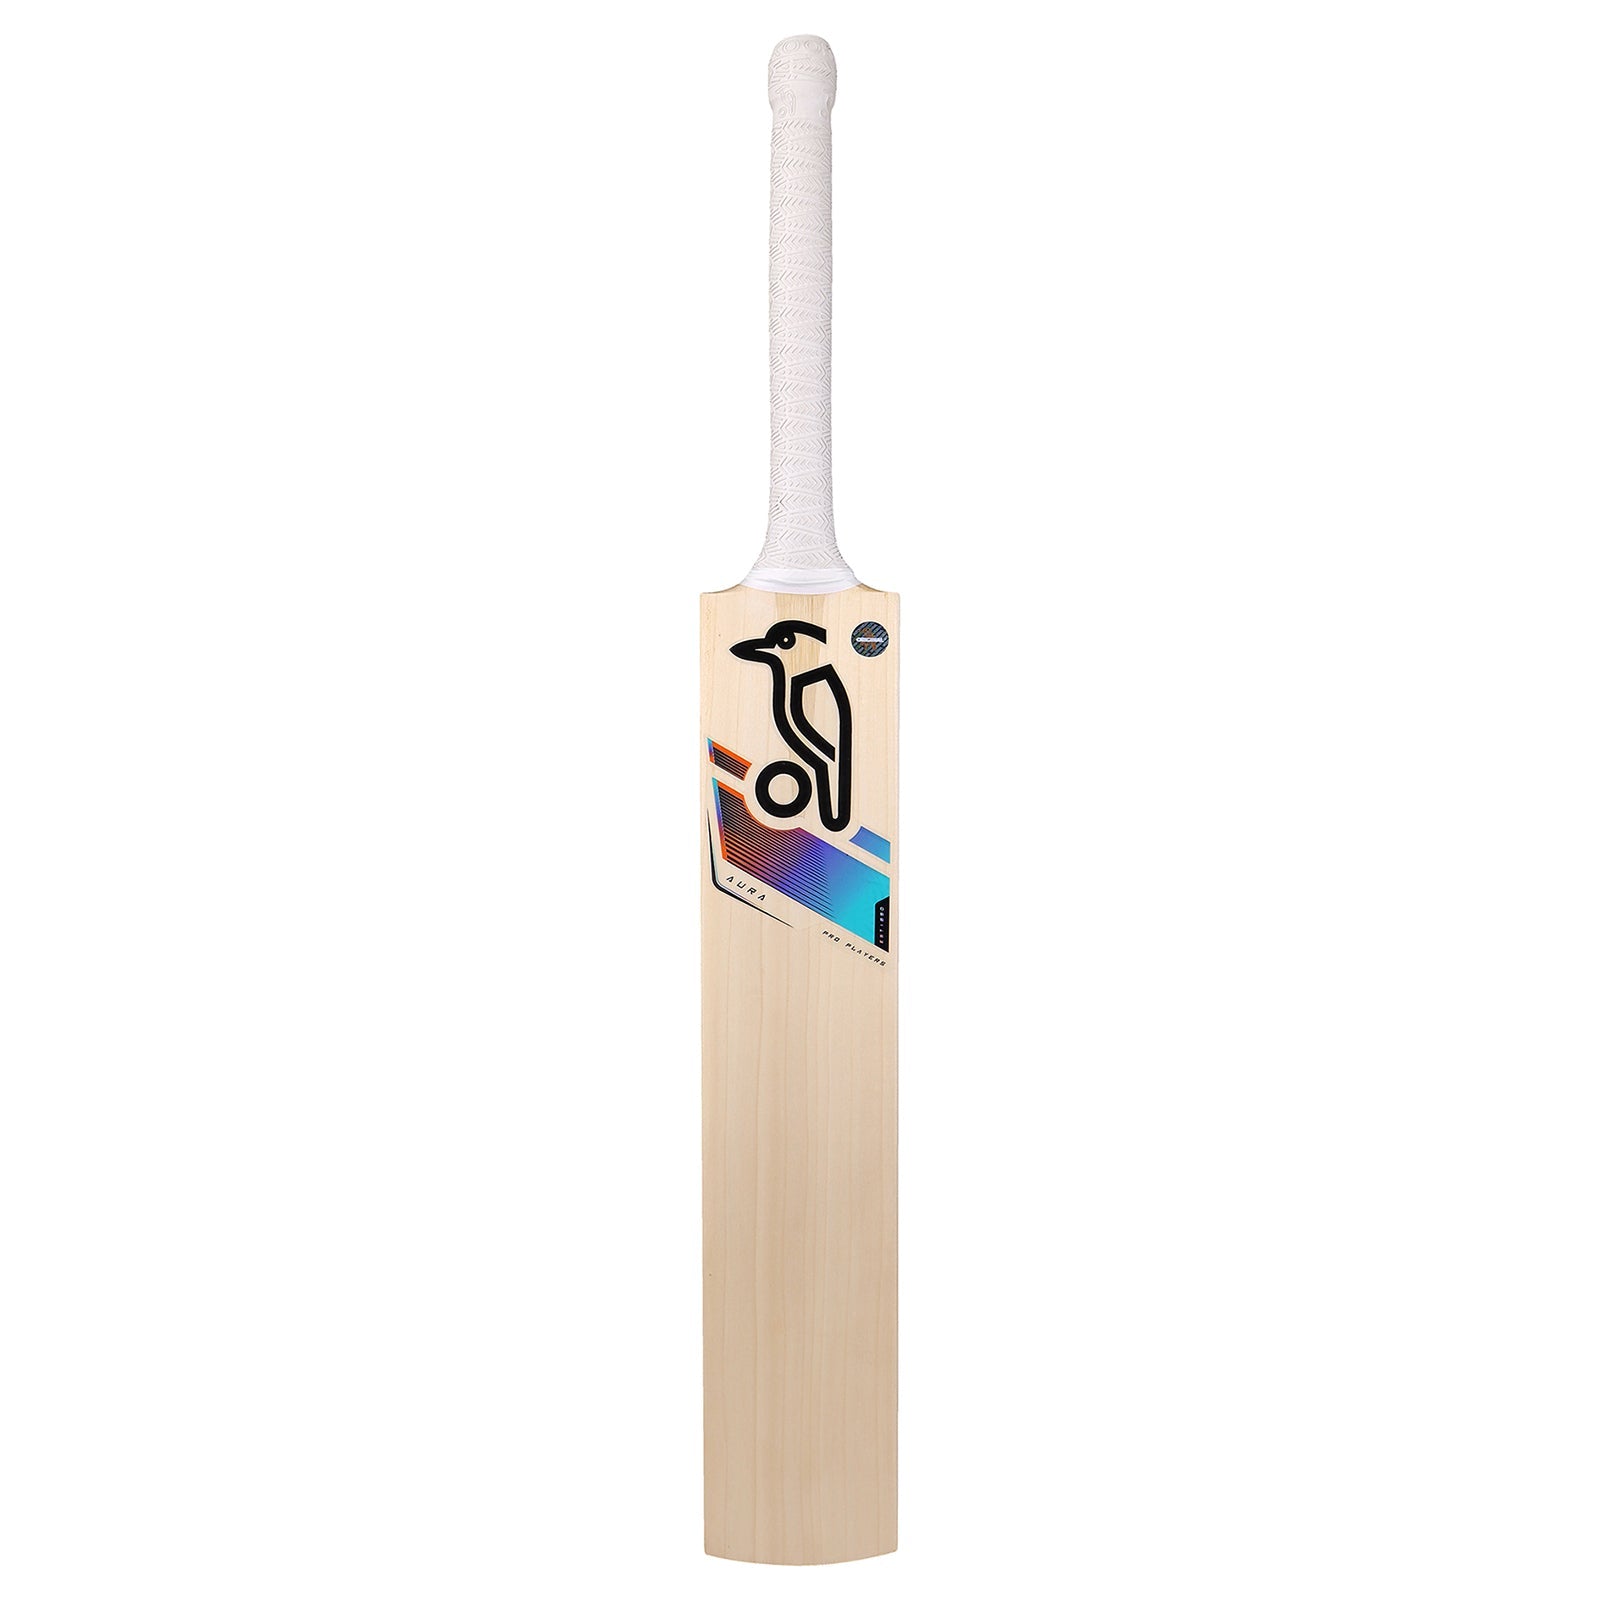 Kookaburra Aura Alex Carey Replica Cricket Bat - Senior